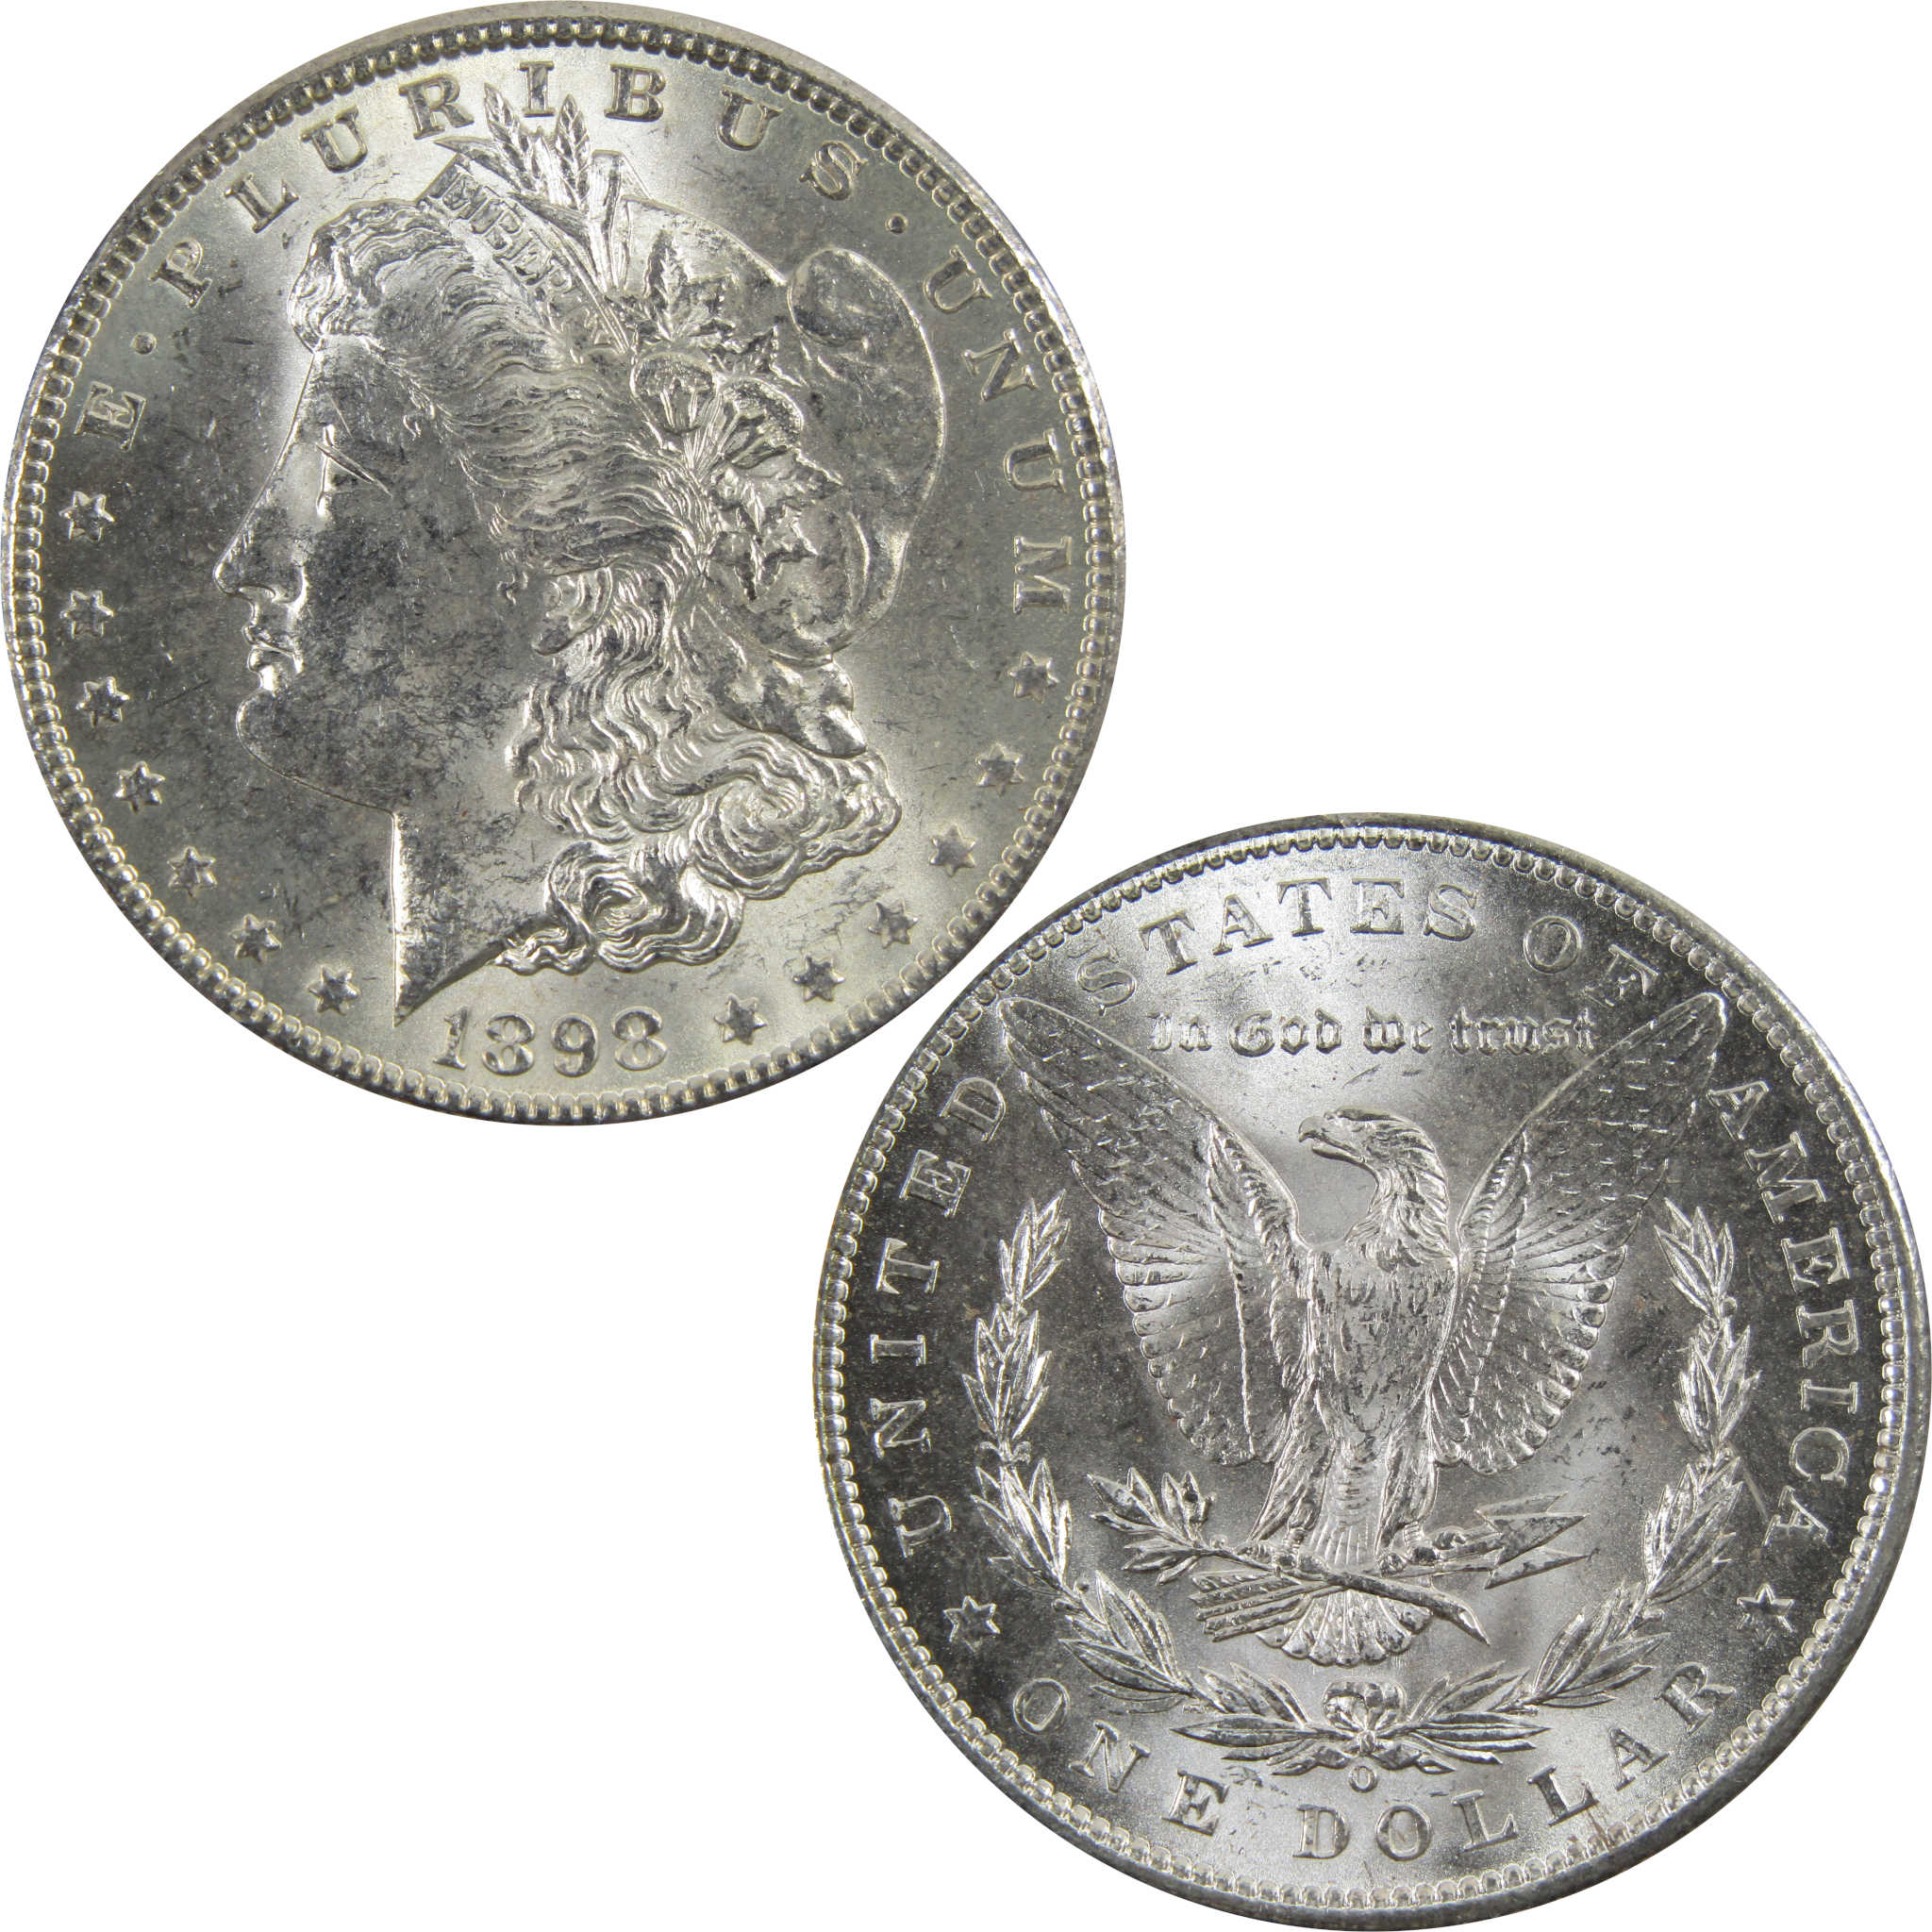 1898 O Morgan Dollar BU Uncirculated 90% Silver $1 Coin SKU:I5236 - Morgan coin - Morgan silver dollar - Morgan silver dollar for sale - Profile Coins &amp; Collectibles